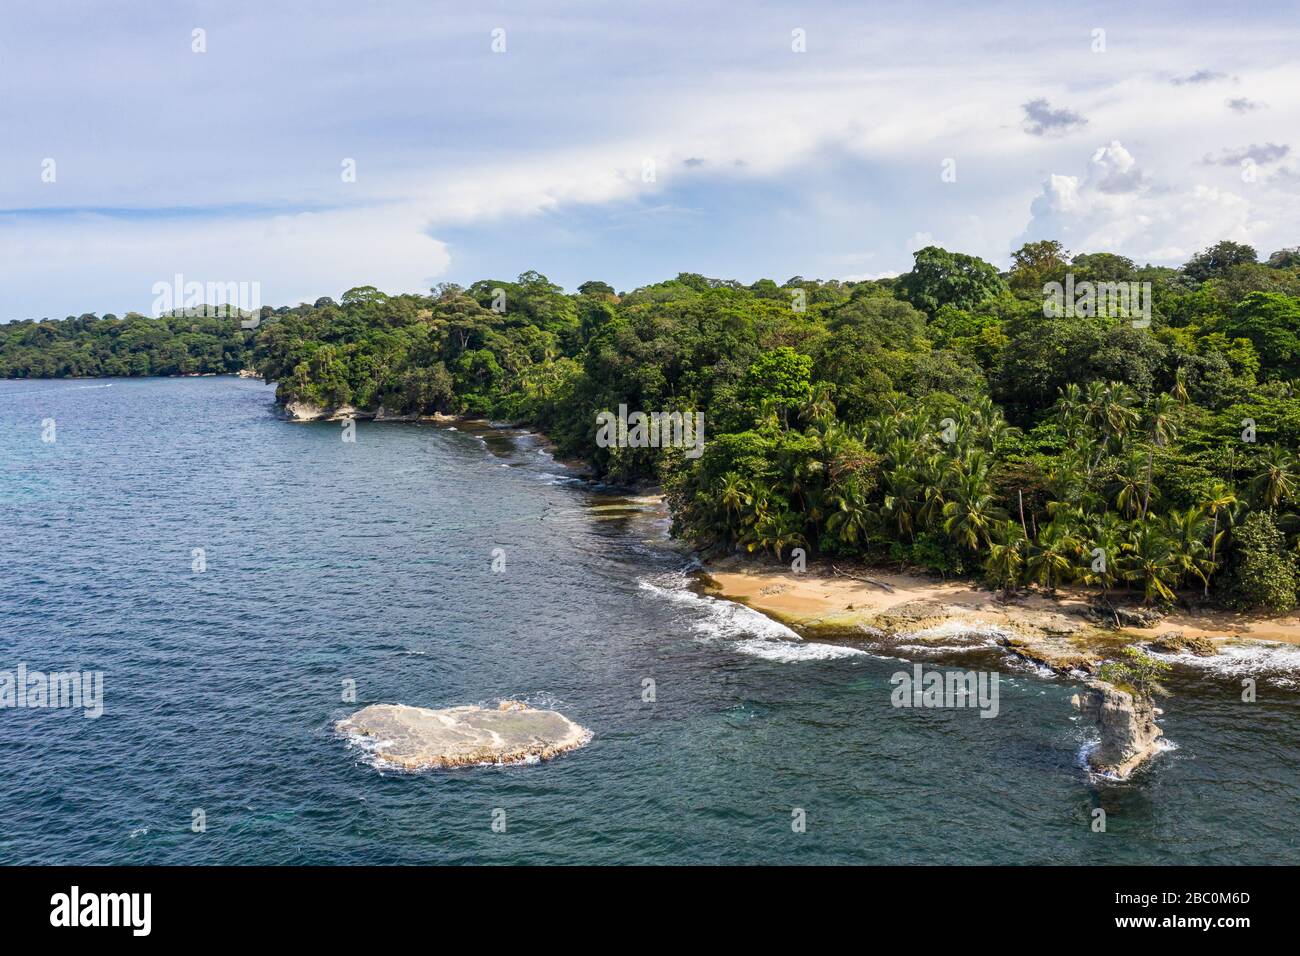 Vista aérea de la costa caribeña del Refugio de vida Silvestre Gandoca Manzanillo en la Provincia de Limón, al este de Costa Rica. Foto de stock